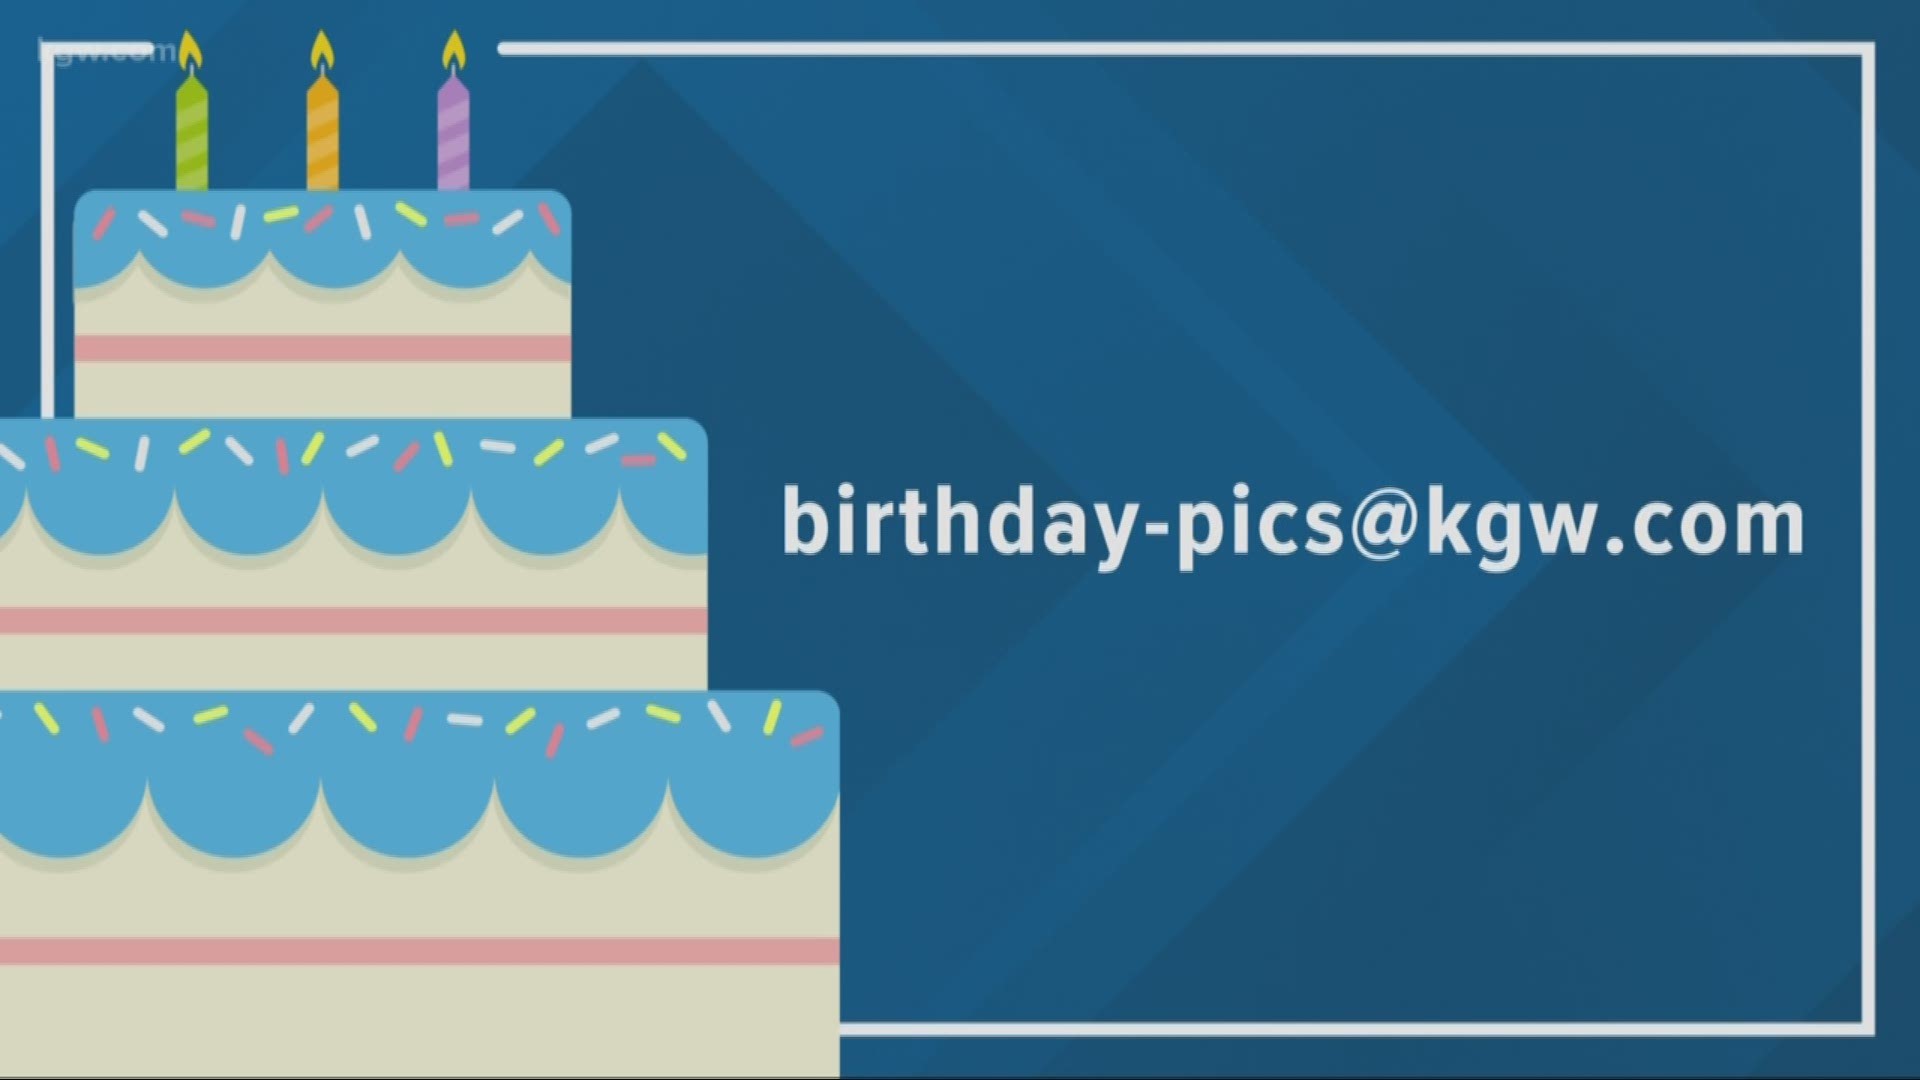 KGW viewer birthdays: 11-8-18